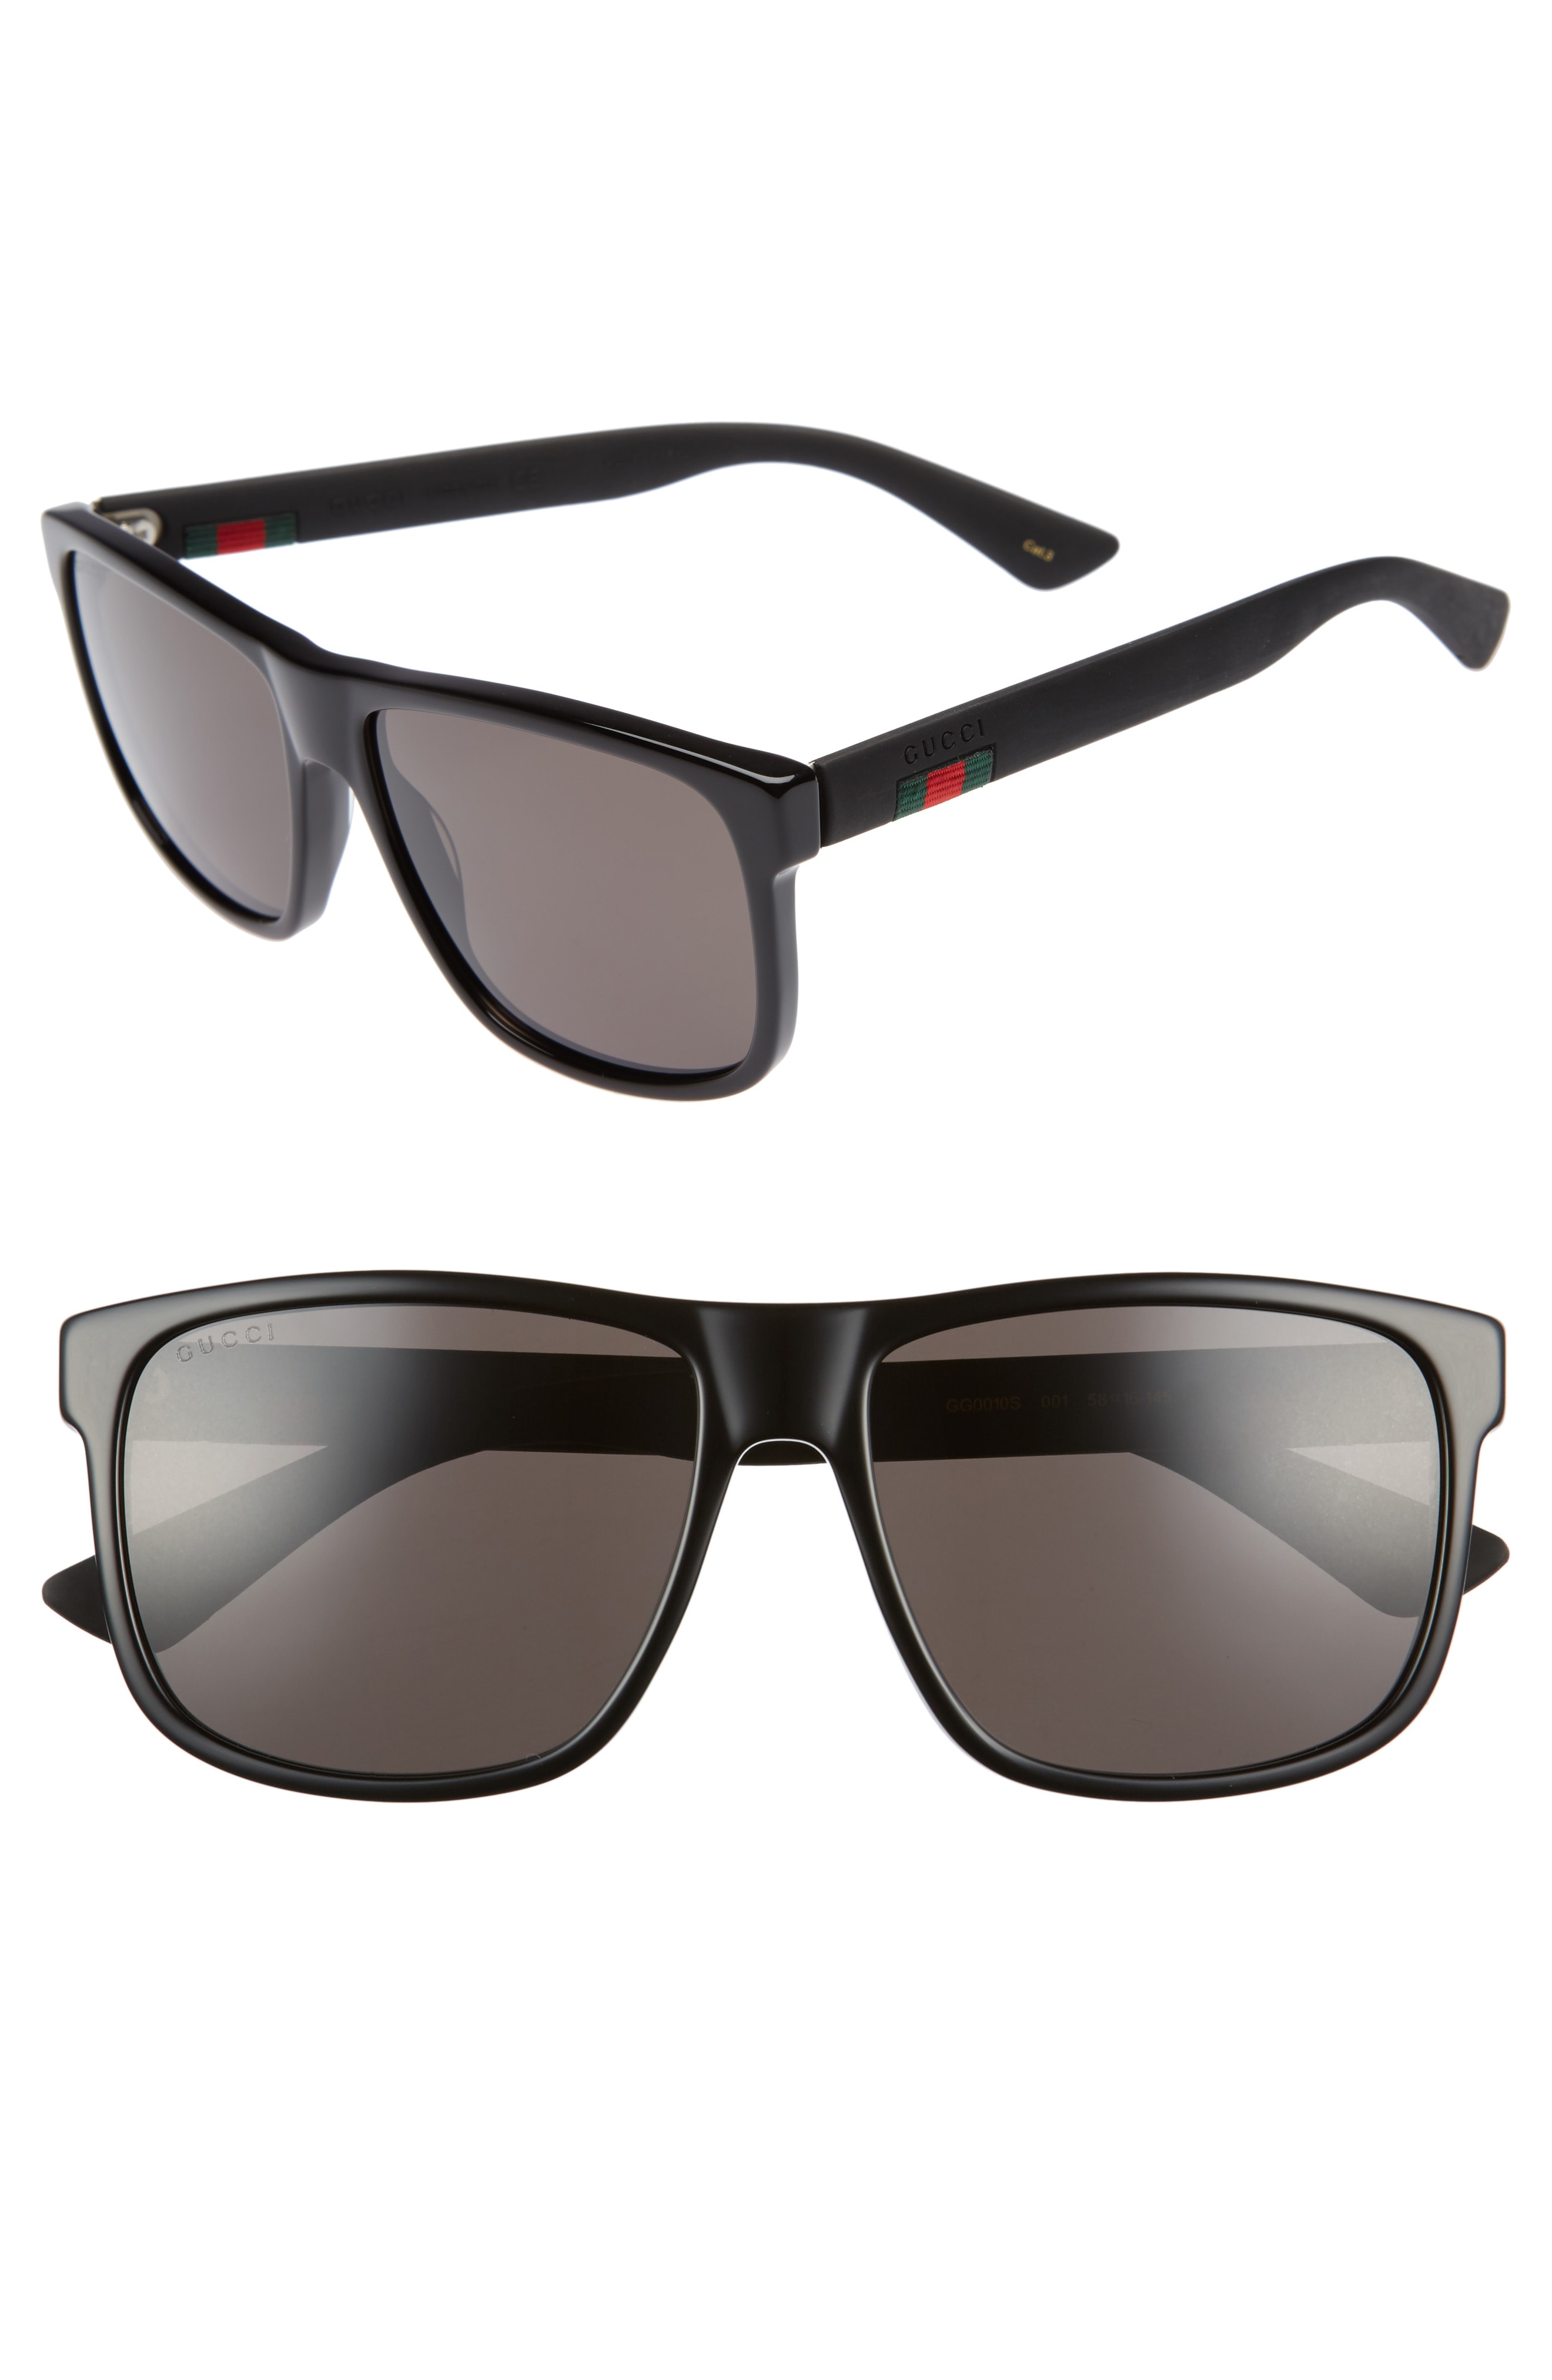 Men's Sunglasses & Eye Glasses | Nordstrom